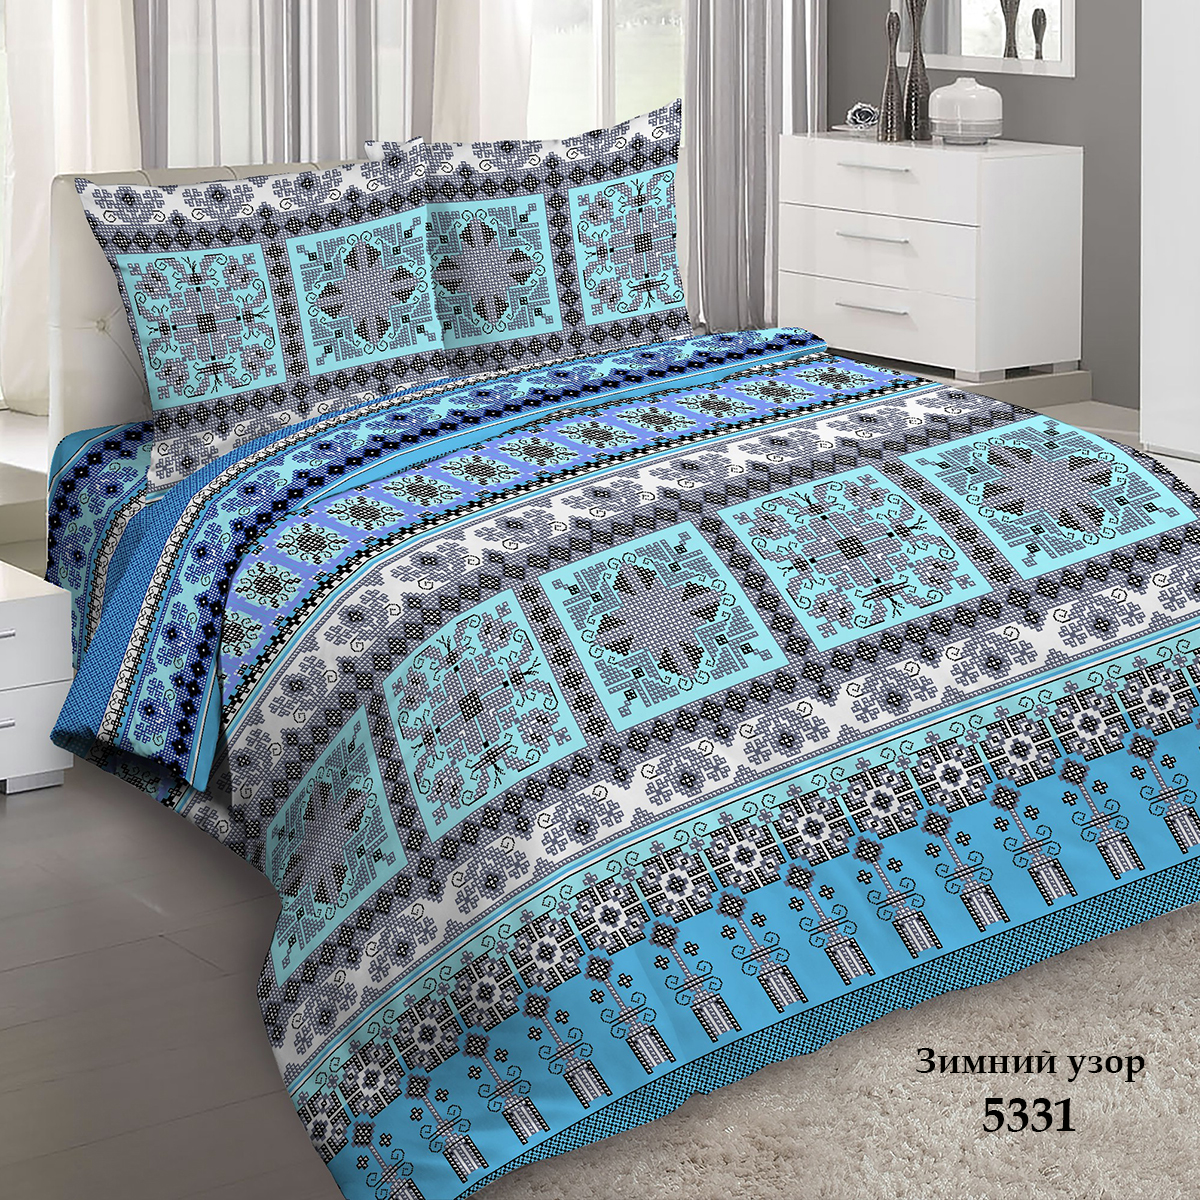 фото Комплект постельного белья Letto "Традиция", 2-х спальный, наволочки 70x70 см. B199-4 Letto home textile